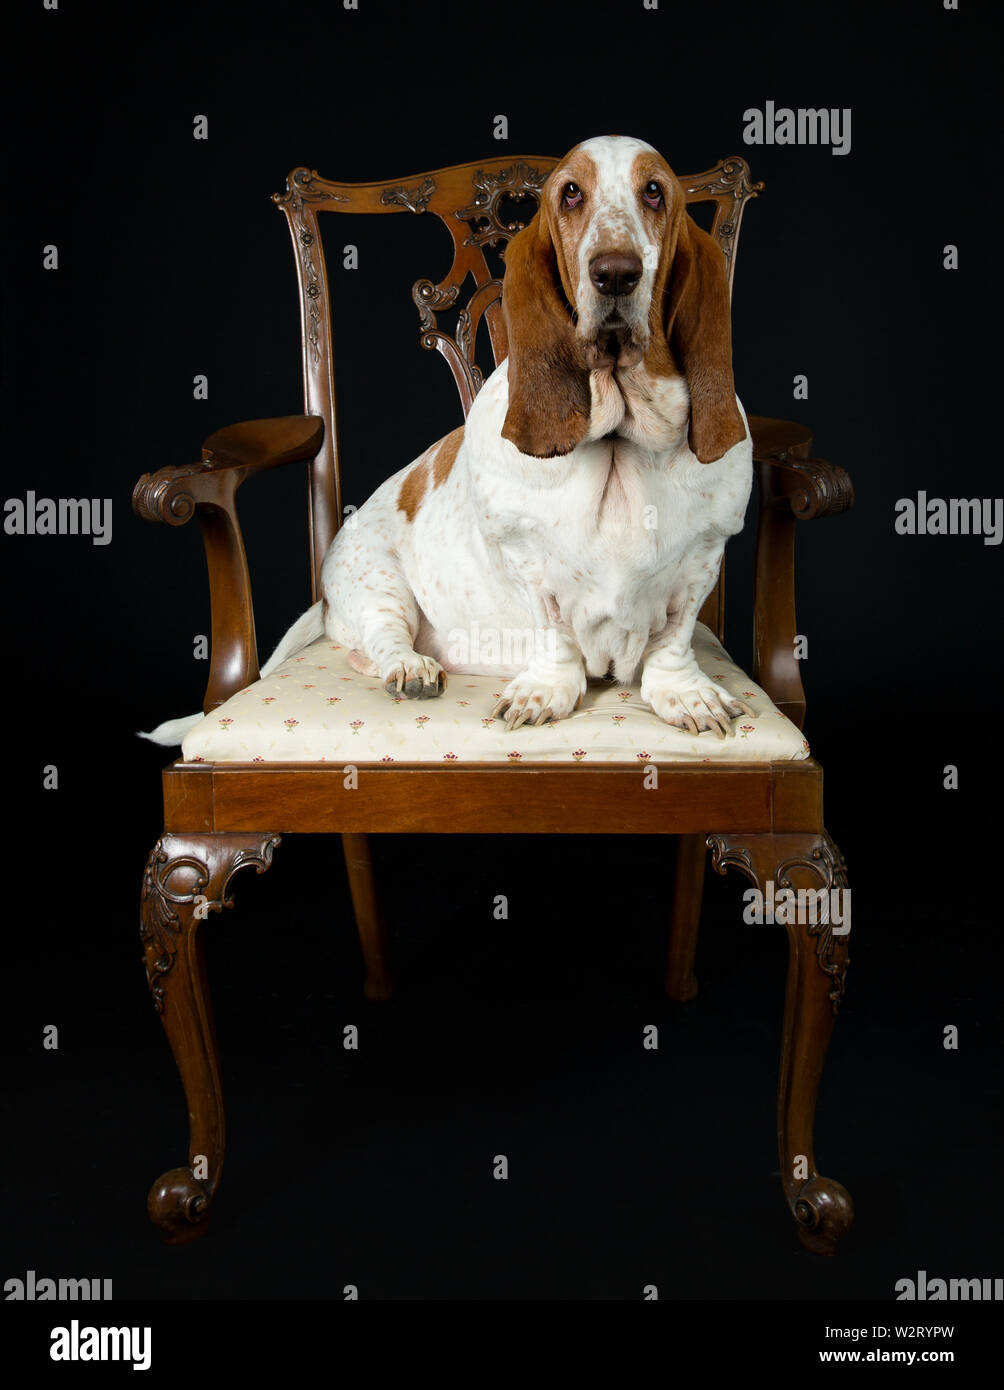 Basset Hound sitting in an antique dining chair, dark background Stock Photo